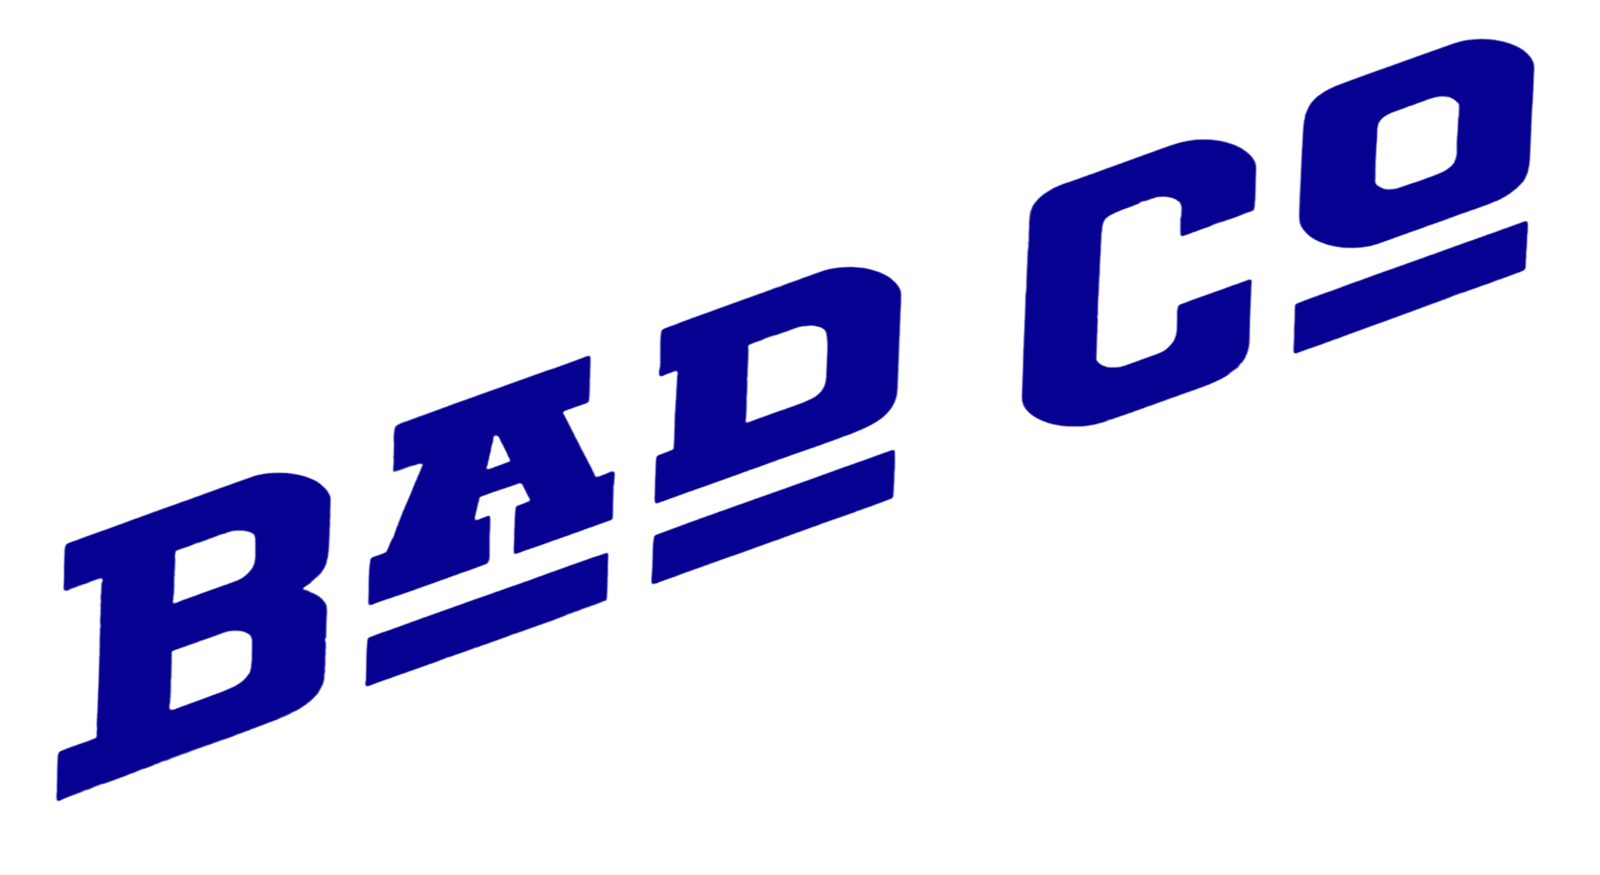 Bad Company logo.